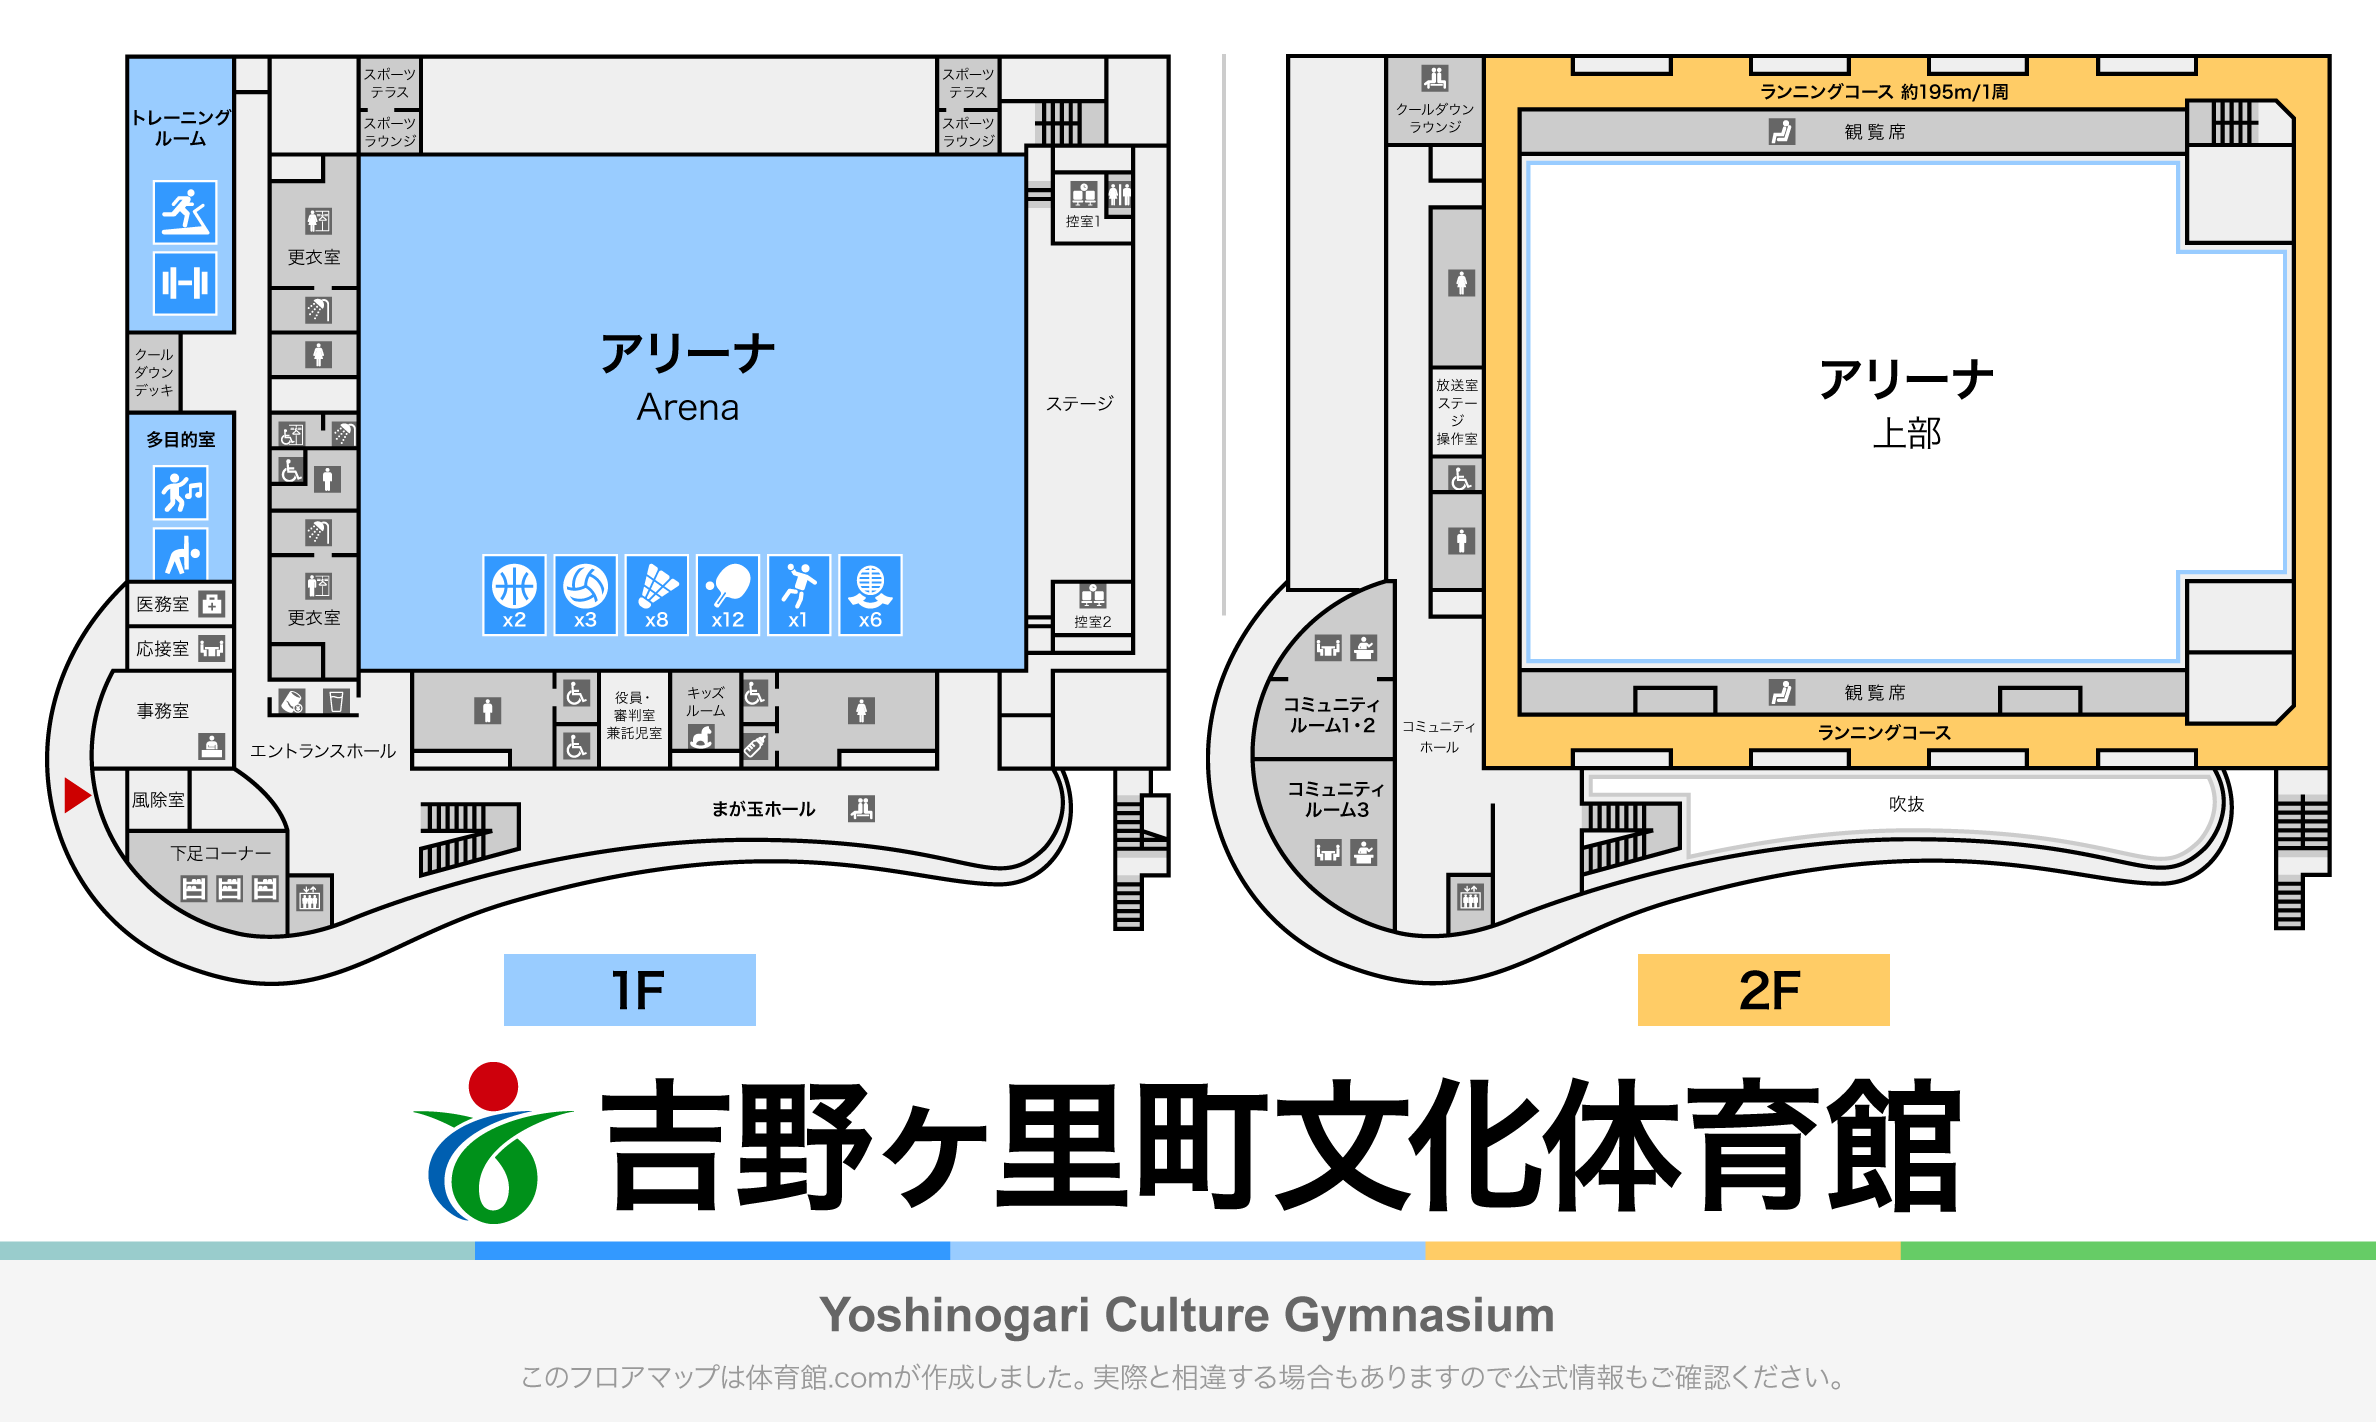 吉野ヶ里町文化体育館のフロアマップ・体育館